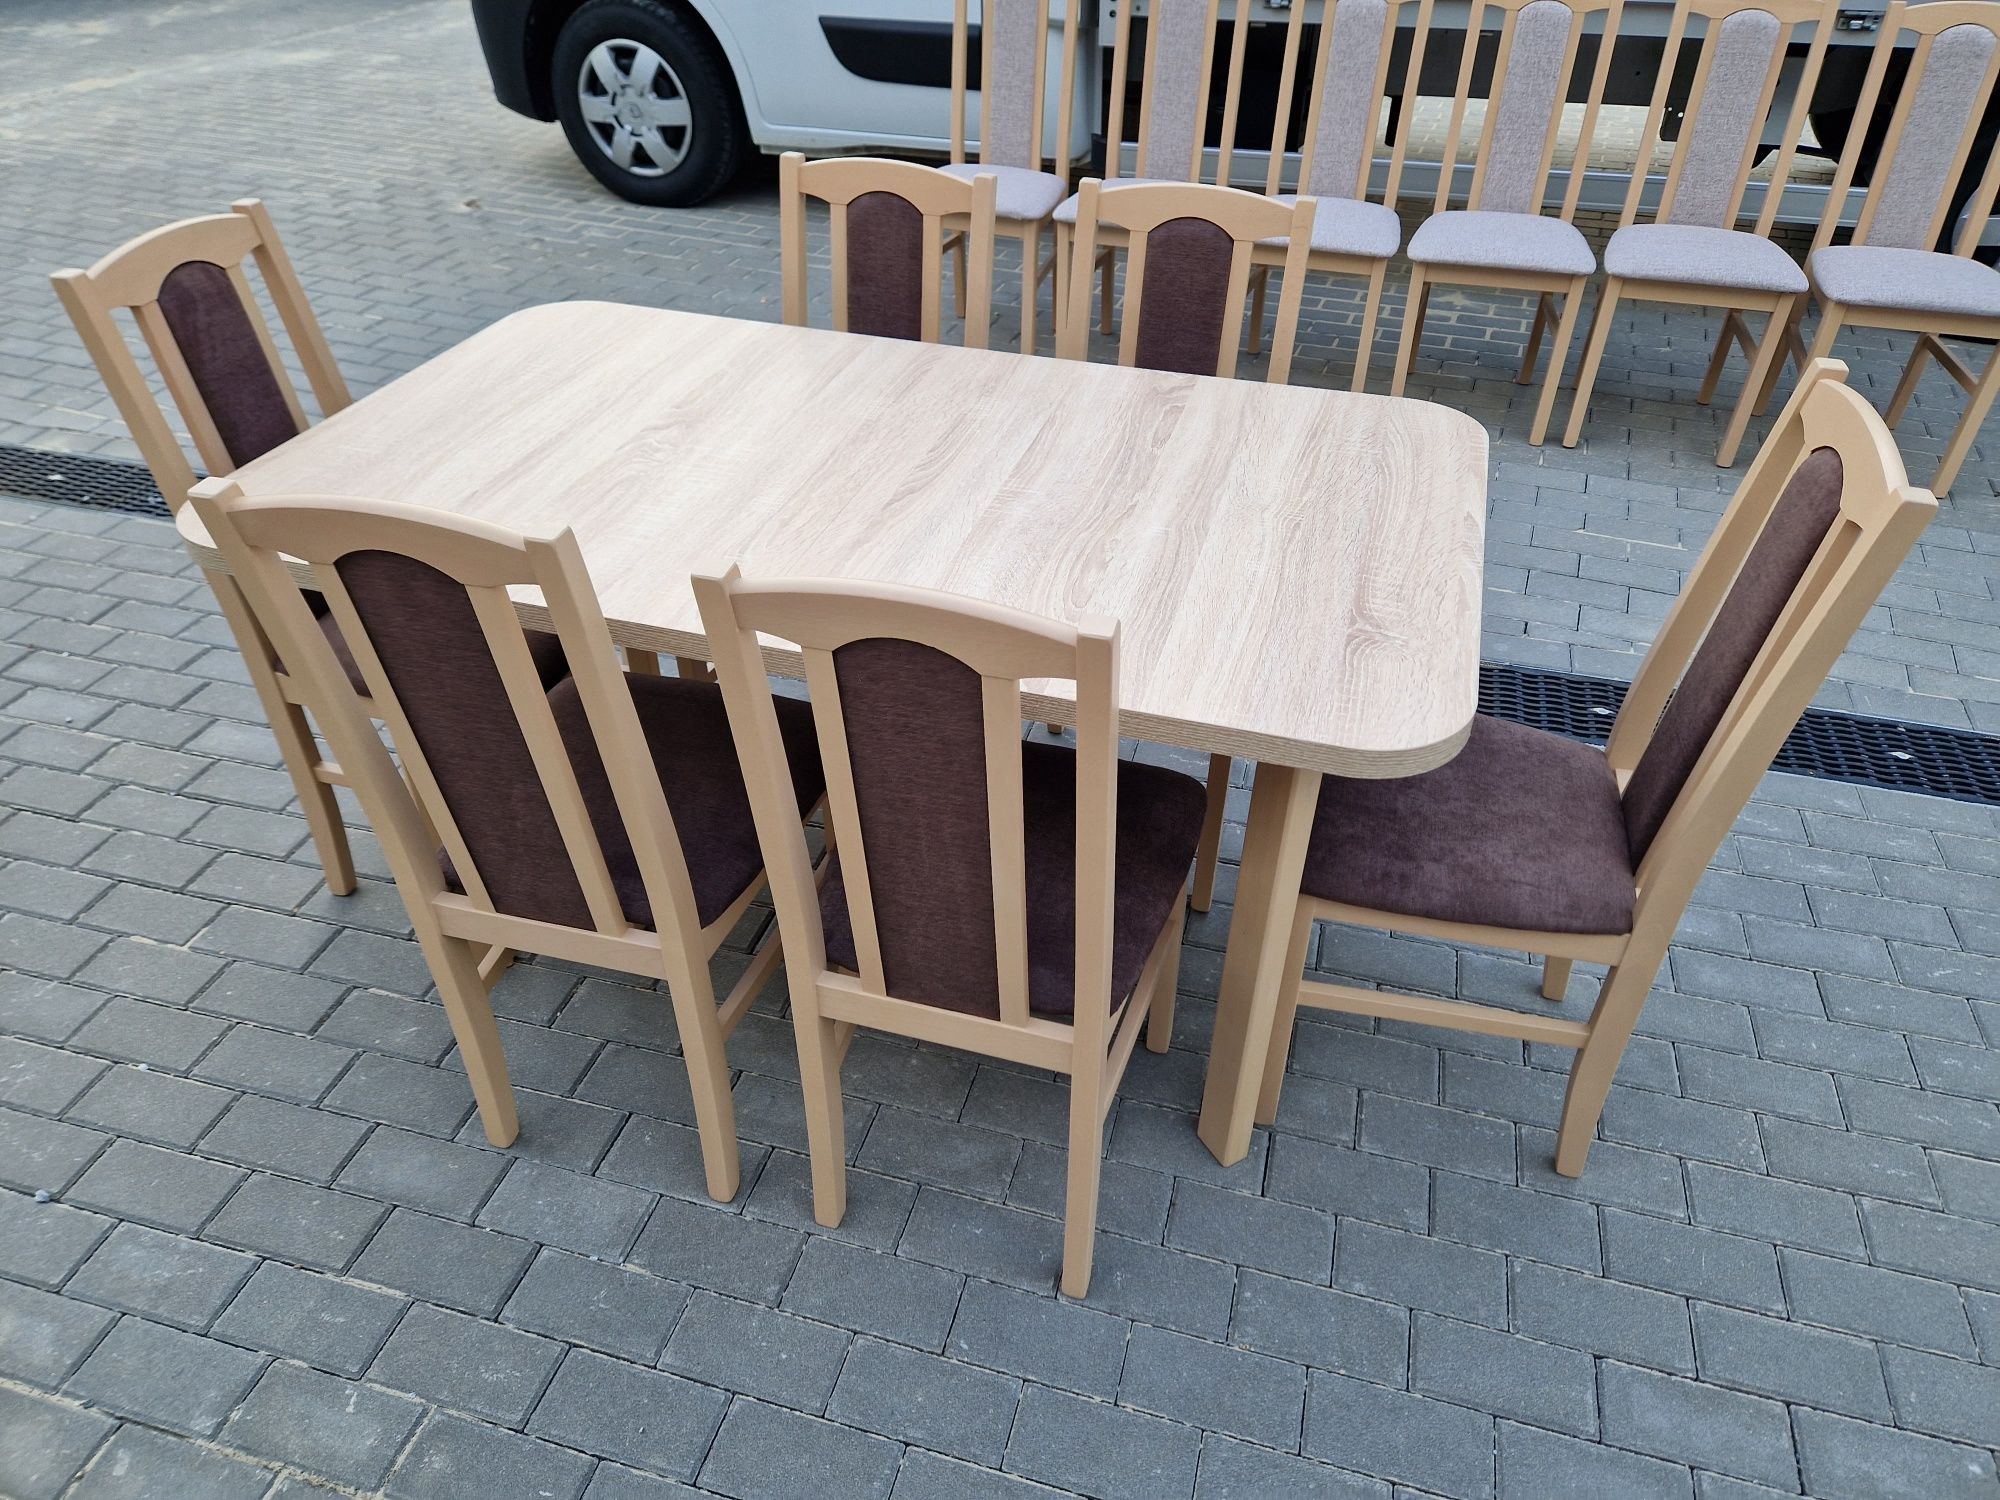 Nowe : Stół + 6 krzeseł,  sonoma + braz , dostawa PL